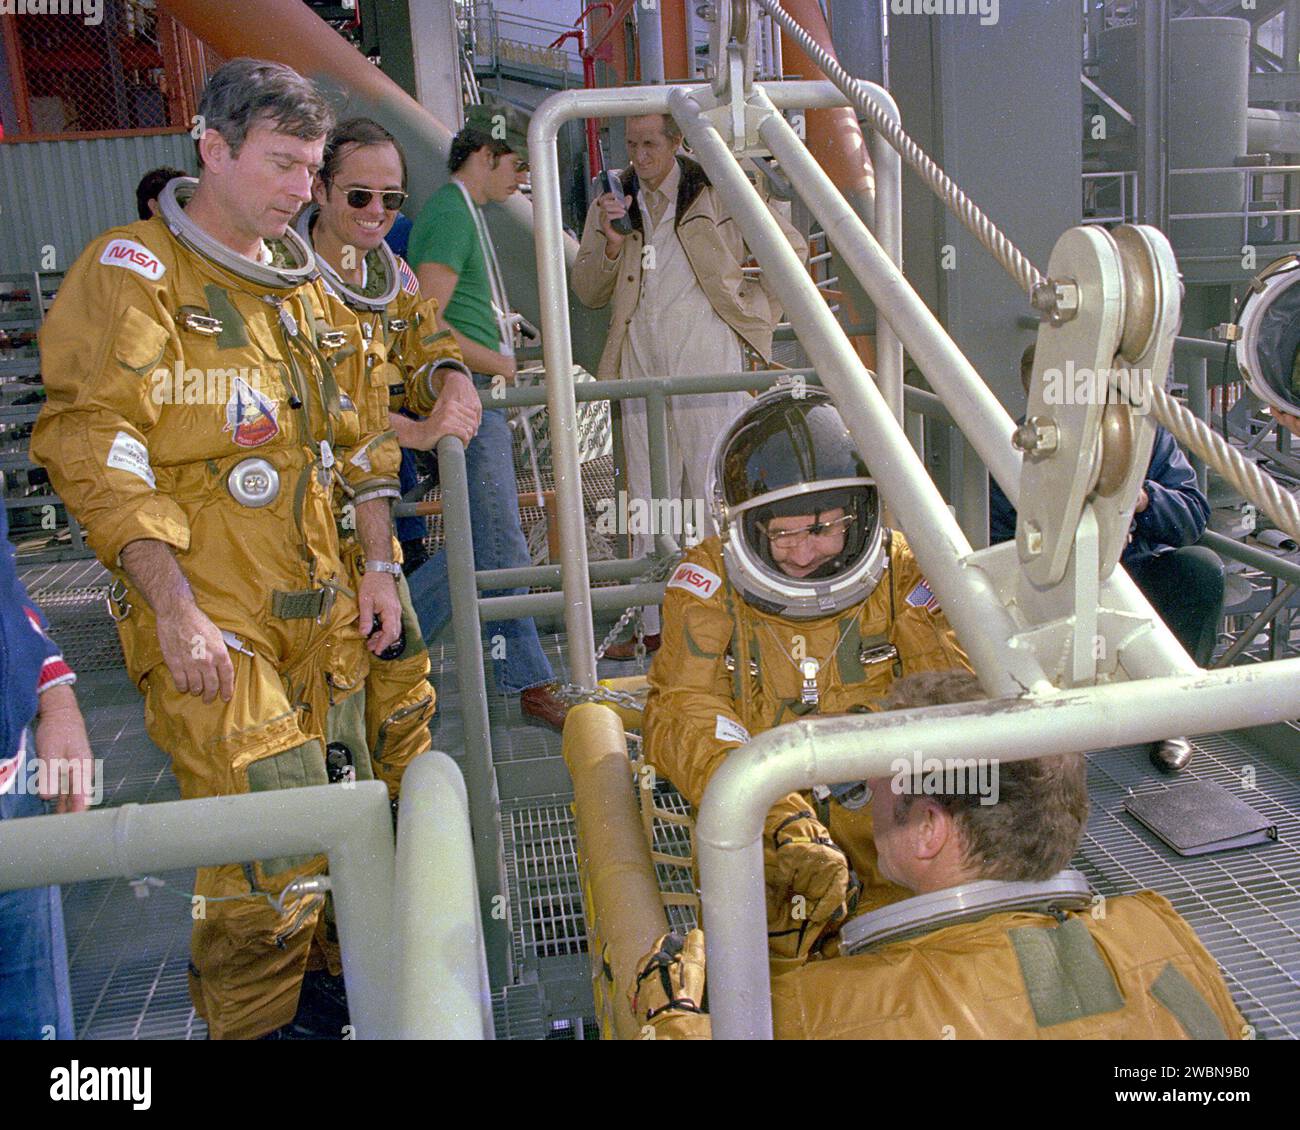 RAUMFAHRTZENTRUM KENNEDY, FLA. - Space Shuttle Commander John Young und Pilot Bob Crippen beobachten, wie die Besatzungsmitglieder Richard True und Joe Engle an Bord des Notauflagesystems gehen, das als Gleitdraht bekannt ist. Das Schiebedrahtsystem ermöglicht ein schnelles Entweichen von den oberen Startplattformen im Falle eines schweren Notfalls. Die Flugbesatzungen trugen die Raumanzüge und andere Ausrüstung, die während einer Mission getragen werden sollten, aber Sandsäcke wurden verwendet, um das Gewicht der Fahrer in den Gleitdraht-Baskeets während des Trainings zu verdoppeln. Stockfoto